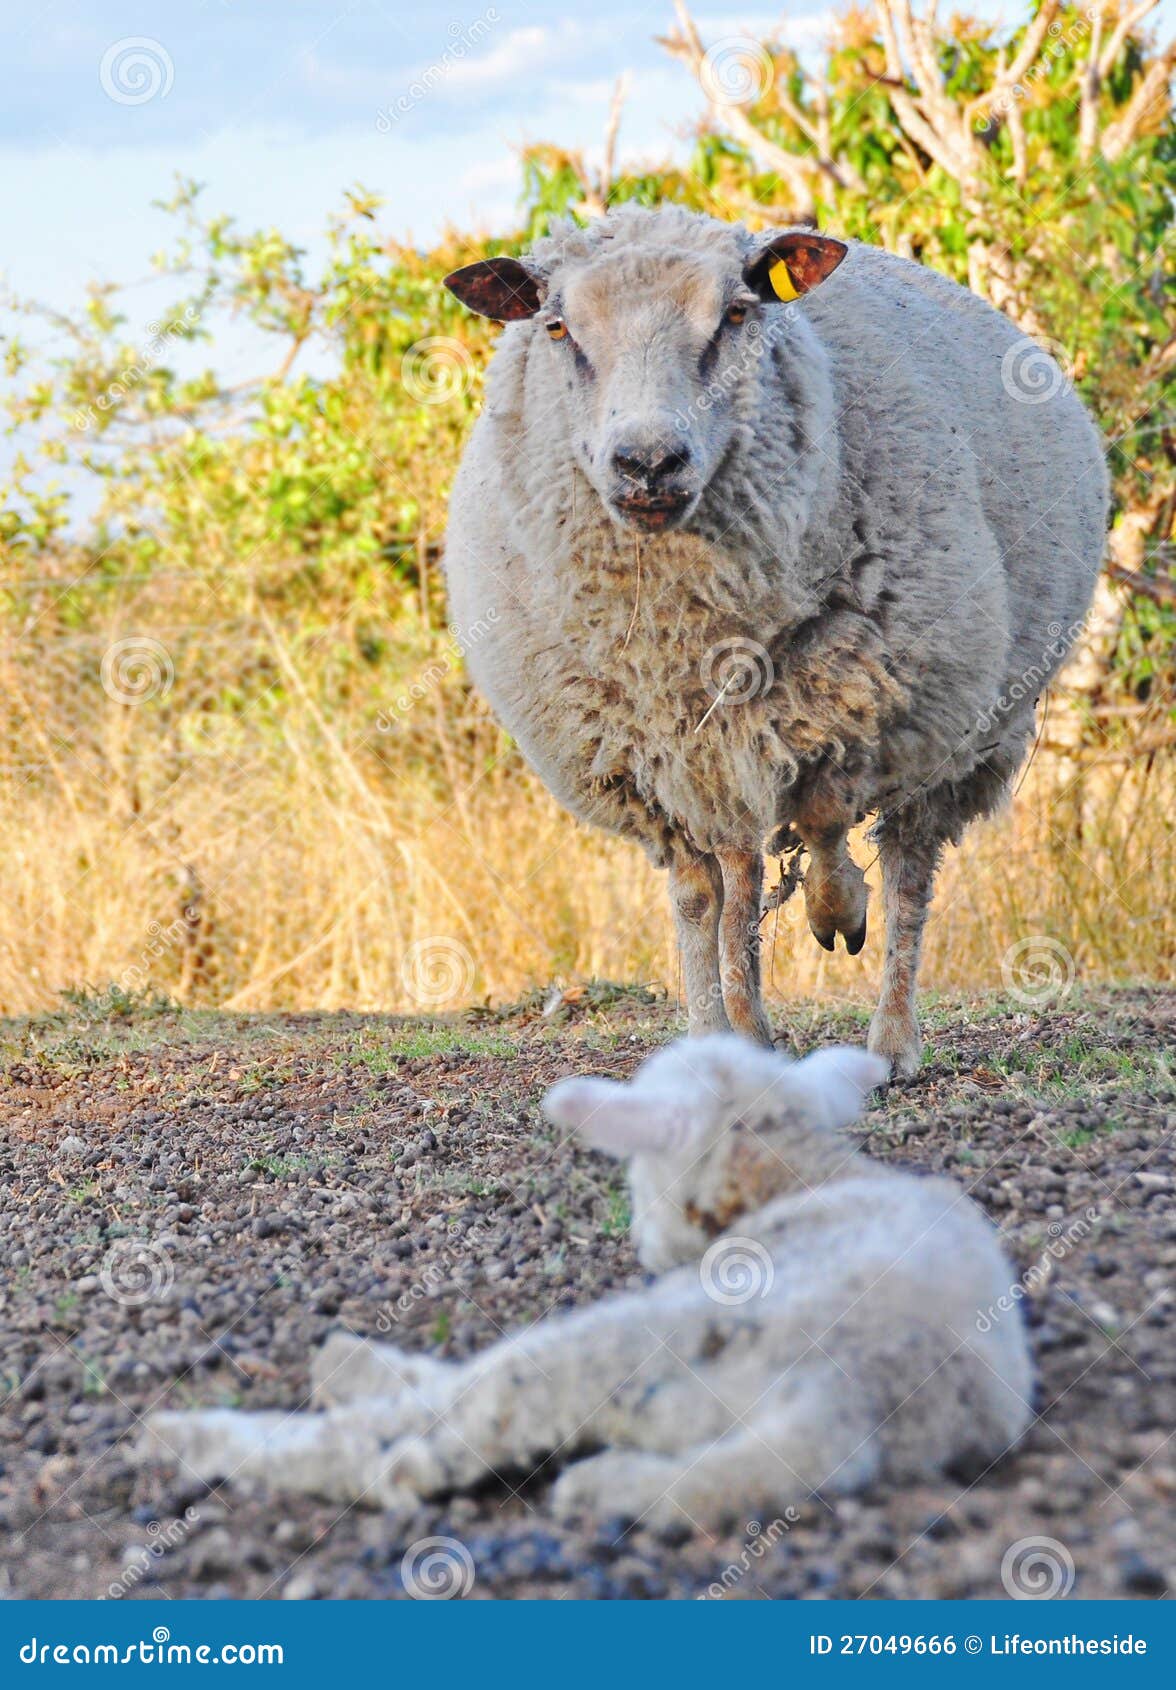 angry merino ewe sheep protecting her baby lamb